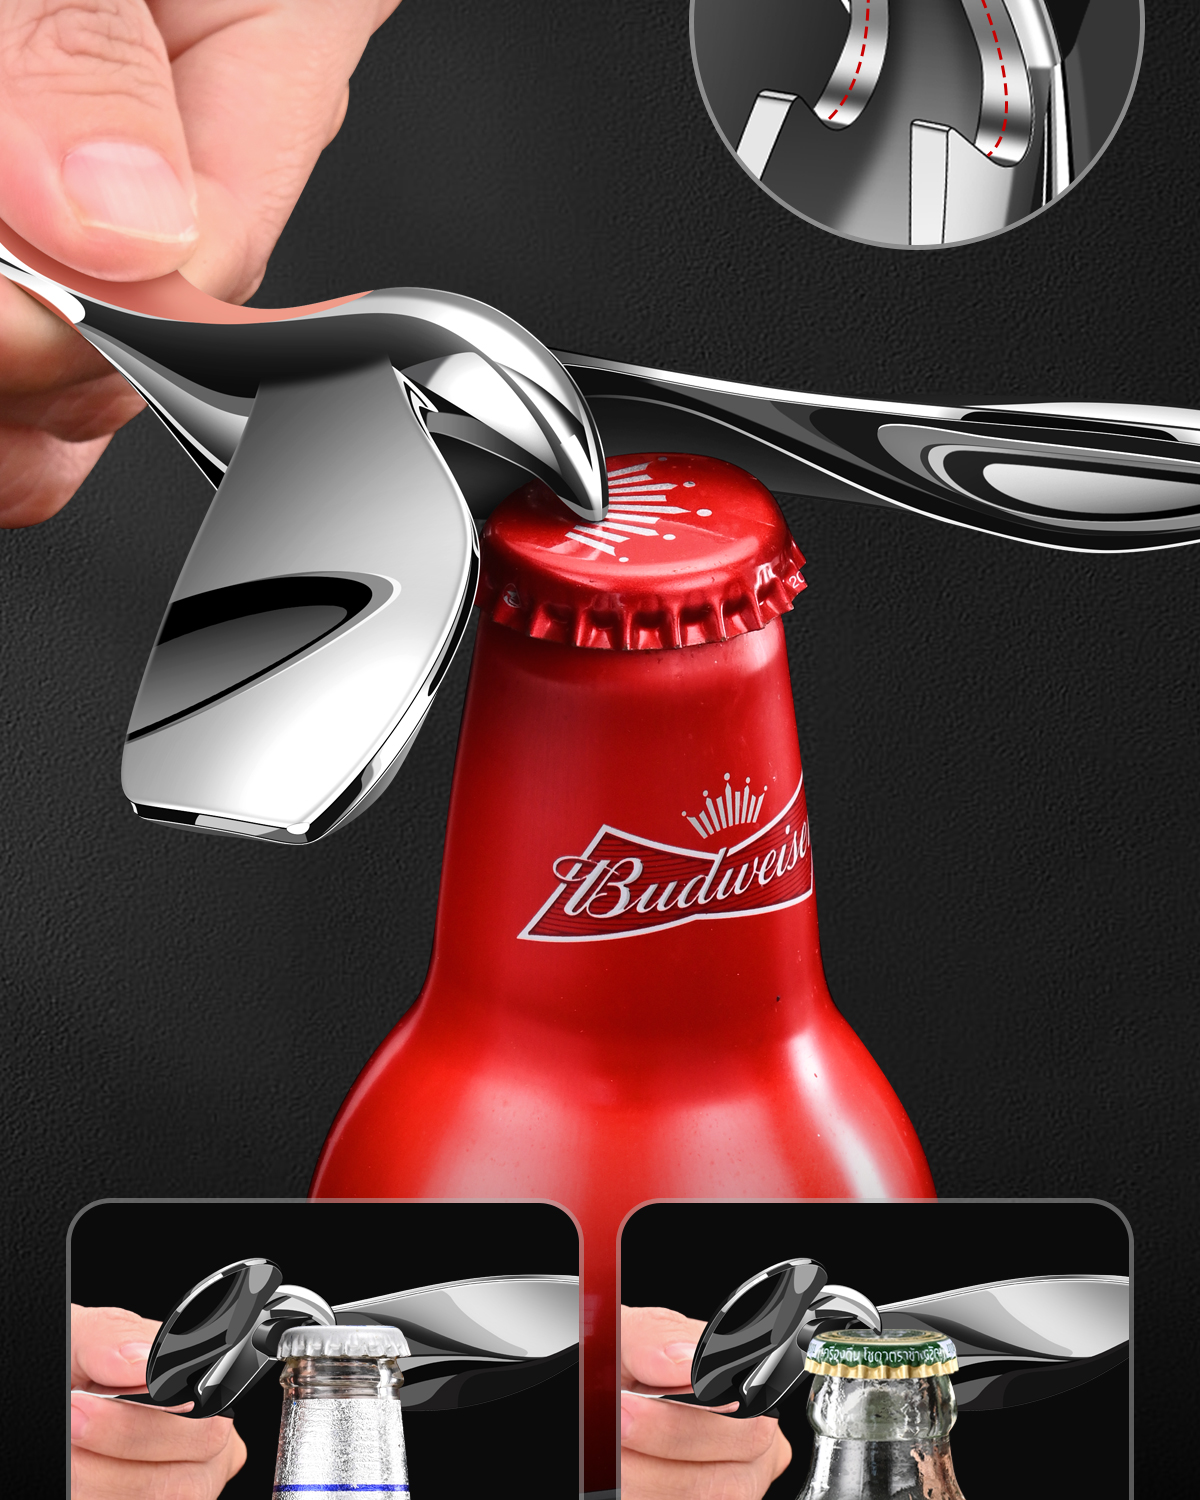 bottle opener